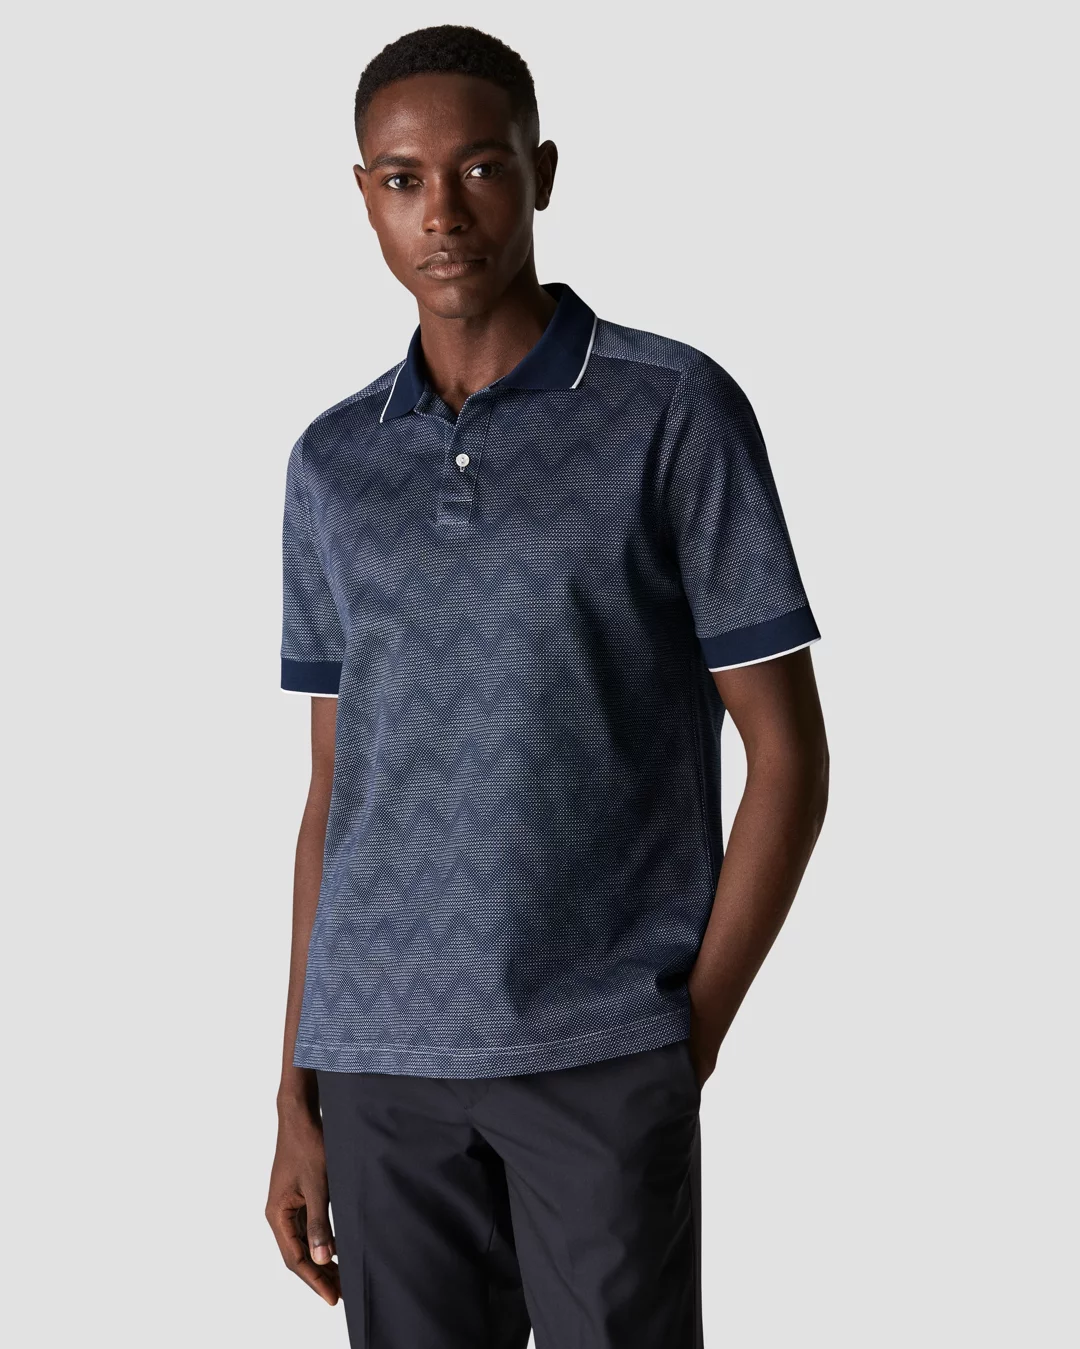 Louis Vuitton Monogram Jacquard Cotton Jersey Shorts Dark Grey